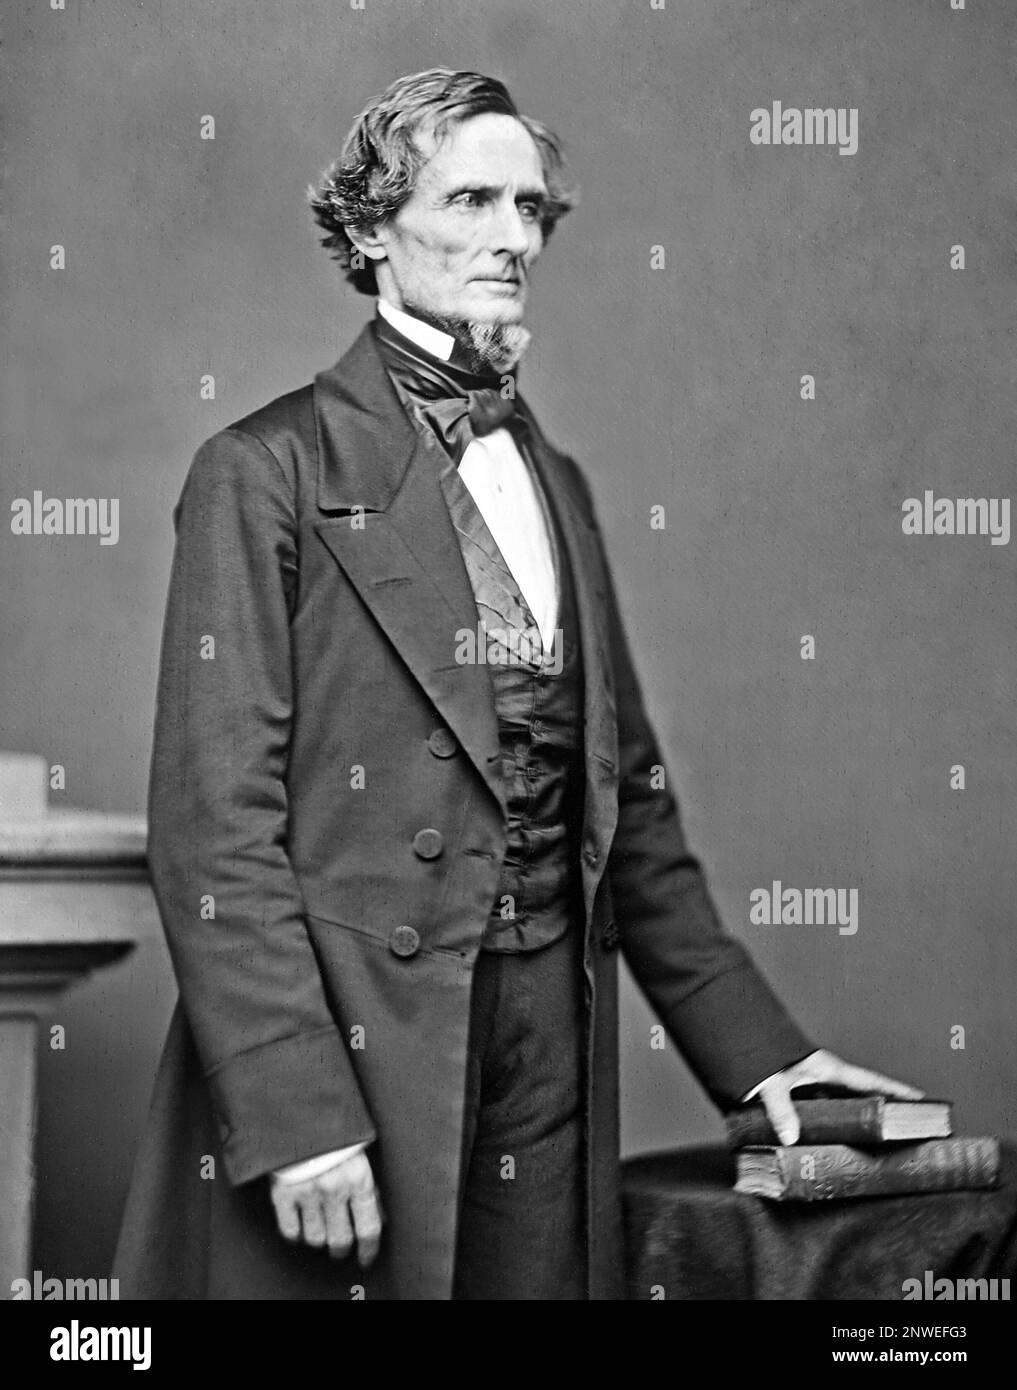 Jefferson F. Davis (1808 – 1889) politico americano che è stato il primo e unico presidente degli stati confederati dal 1861 al 1865. Foto Stock